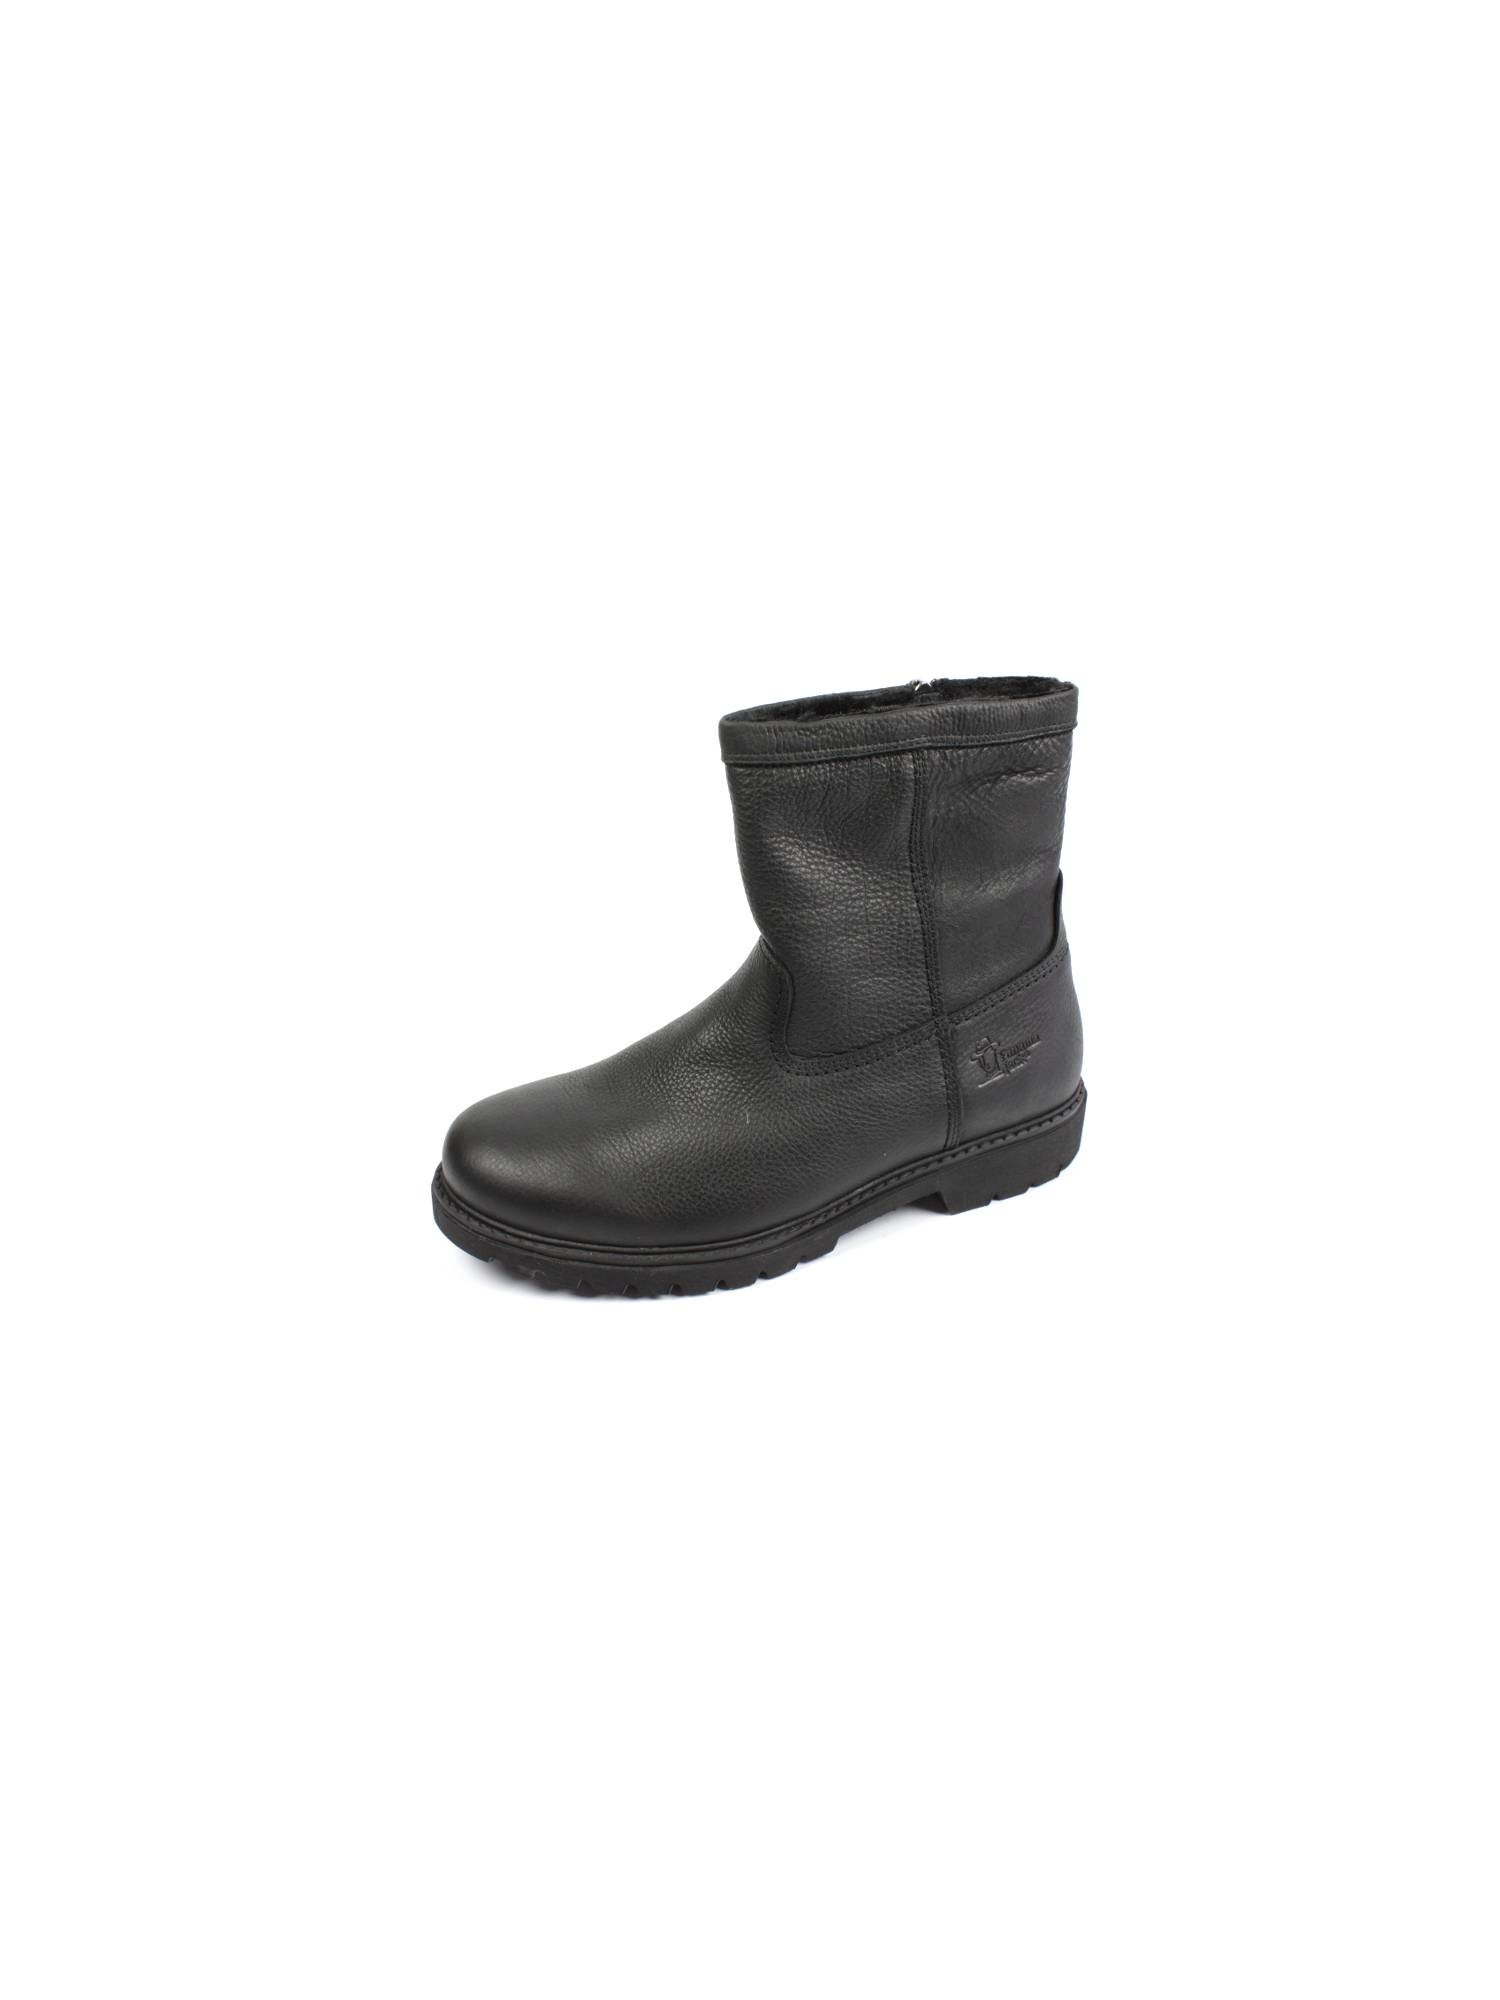 Panama Jack Fedro C3 Boots sportief Direct leverbaar uit de webshop van www.pontman.nl/